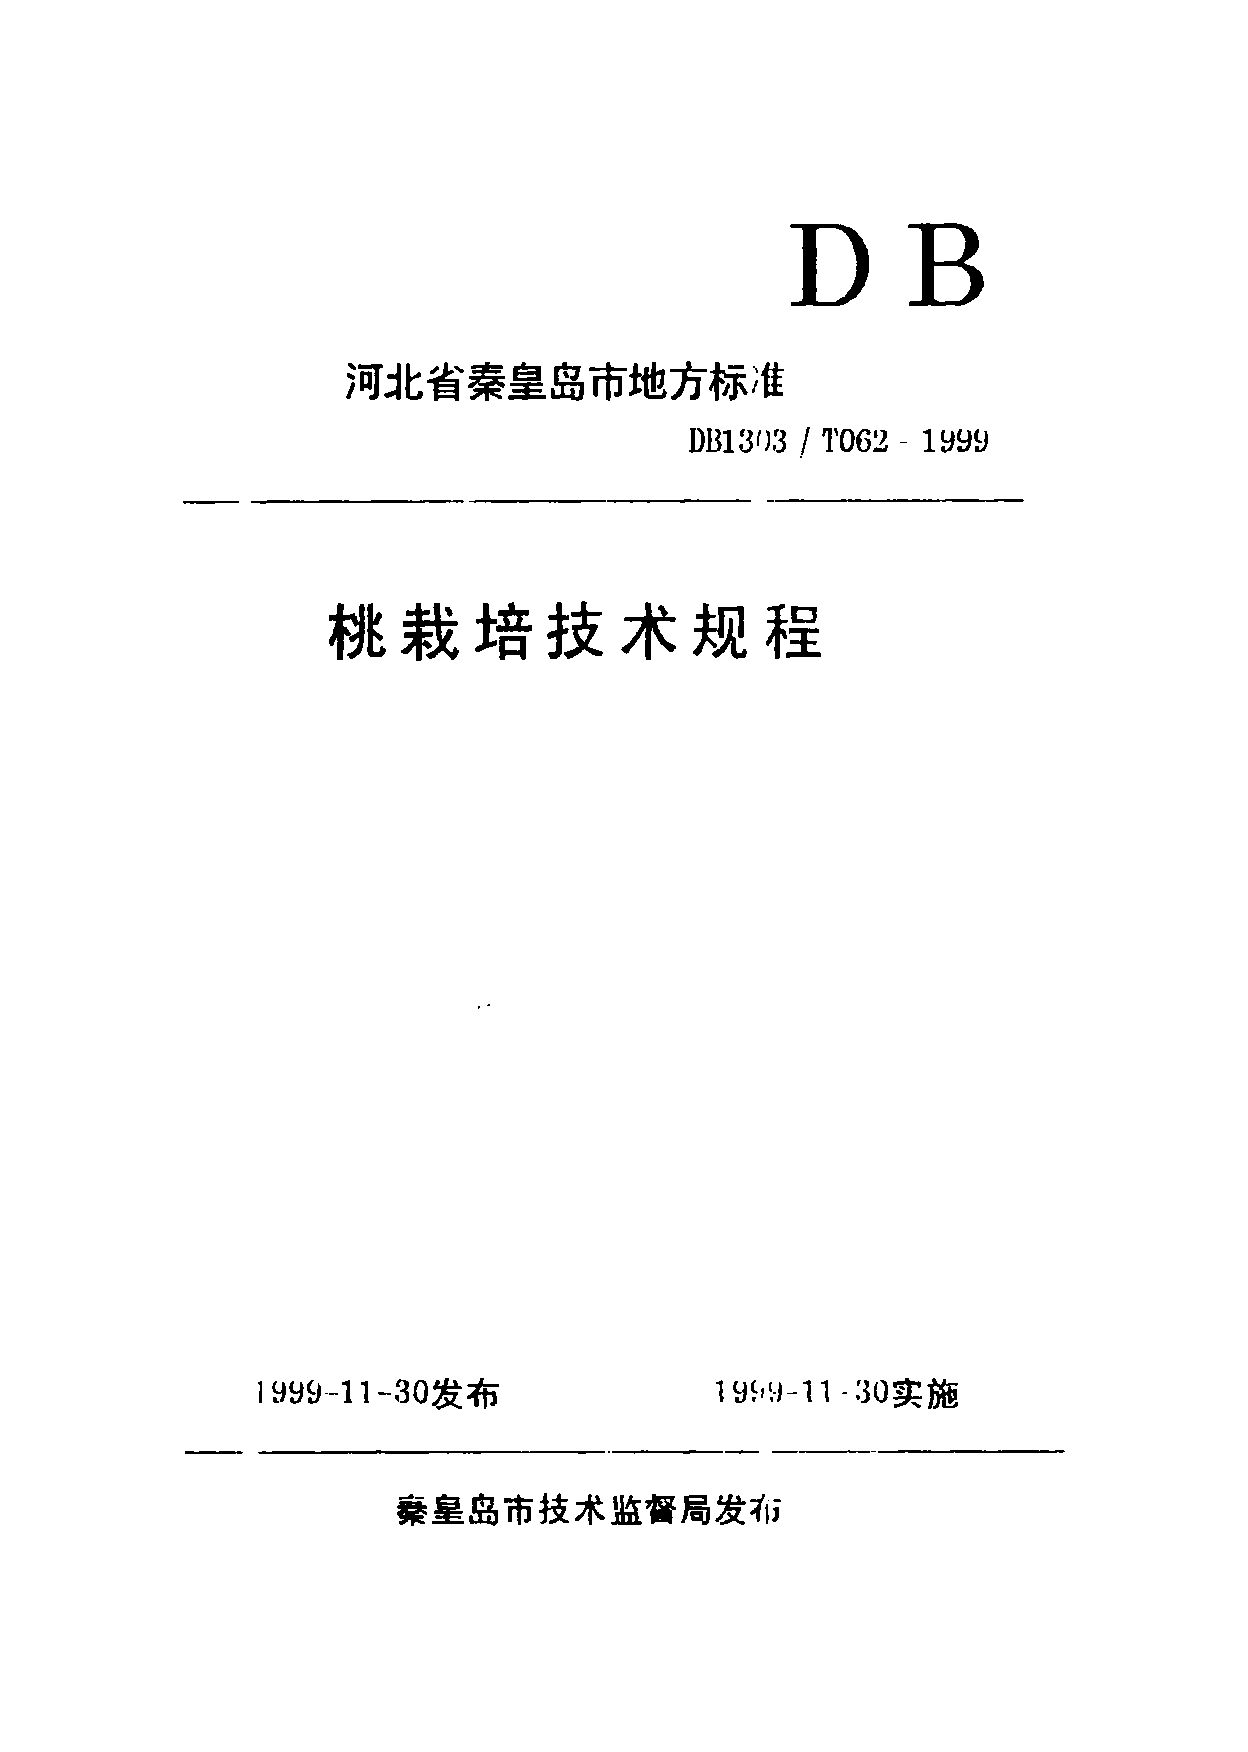 DB1303/T 062-1999封面图